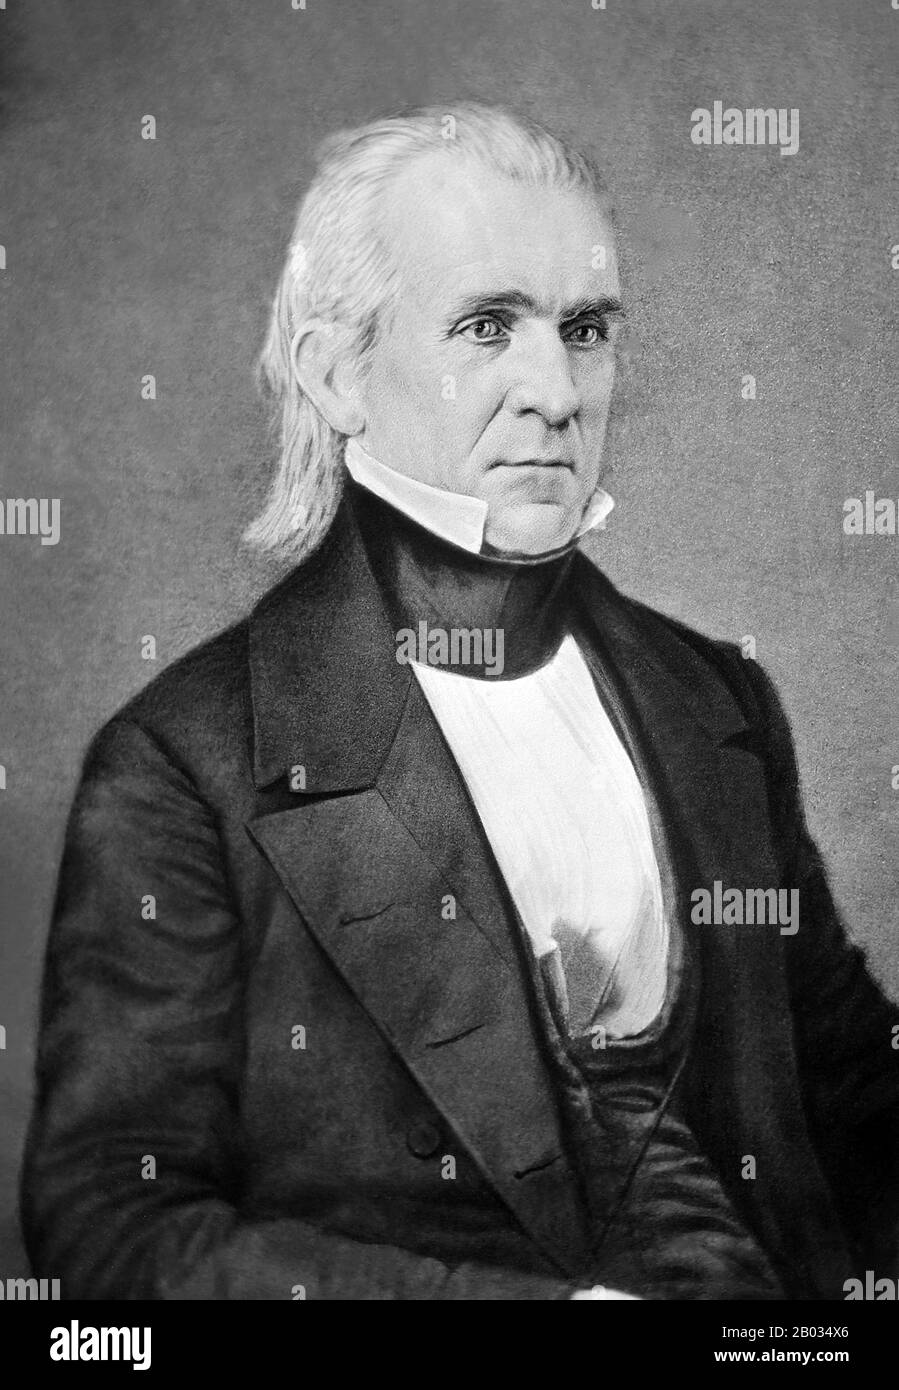 James Knox Polk (* 2. November, † 15. Juni 1849) war der 11. Präsident der Vereinigten Staaten (22-49). Polk wurde im Mecklenburg County in North Carolina geboren. Später lebte und vertrat er Tennessee. Als Demokrat war Polk der 13. Sprecher des Repräsentantenhauses (1831-39) - der einzige präsident, der als Sprecher des Repräsentantenhauses fungiert hat - und Gouverneur von Tennessee (1831-41). Polk war der überraschende (dunkle Pferd) Kandidat für das präsidentenamt im Jahr 1844 und besiegte Henry Clay von der rivalisierenden Whig Party, indem er versprach, die Republik Texas zu annektieren. Polk war während der Zweiten Stufe Anführer der Jacksonian Democracy Stockfoto